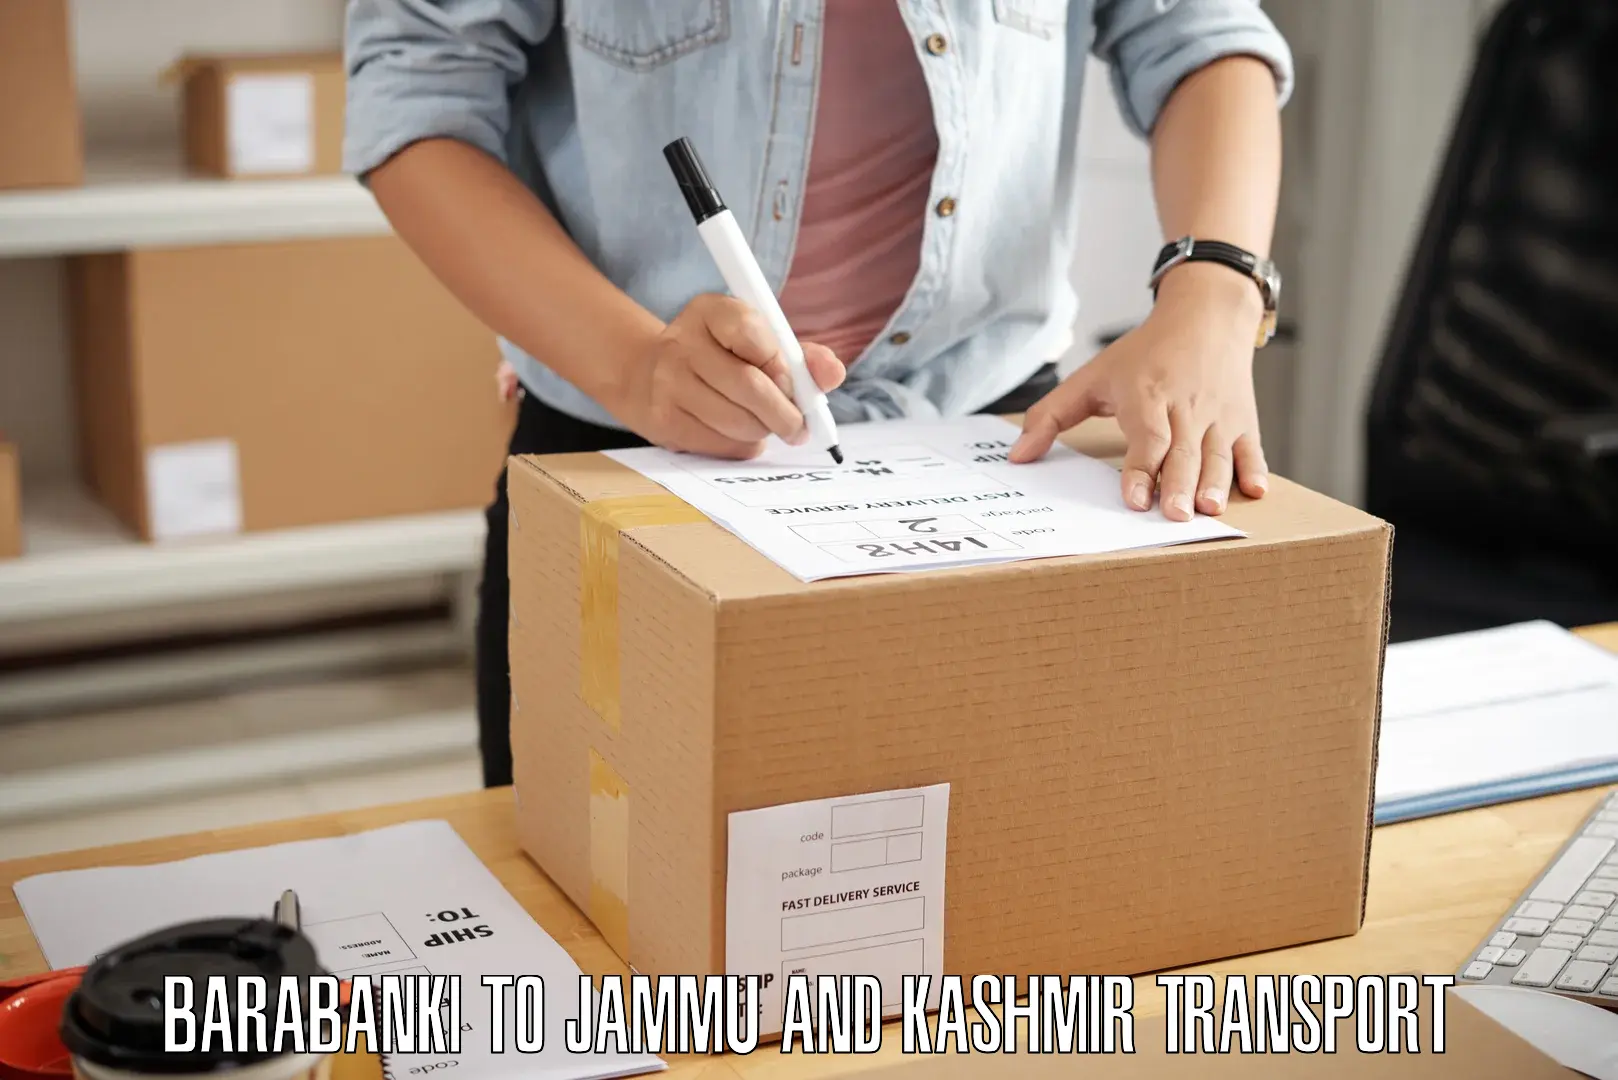 Furniture transport service Barabanki to Srinagar Kashmir